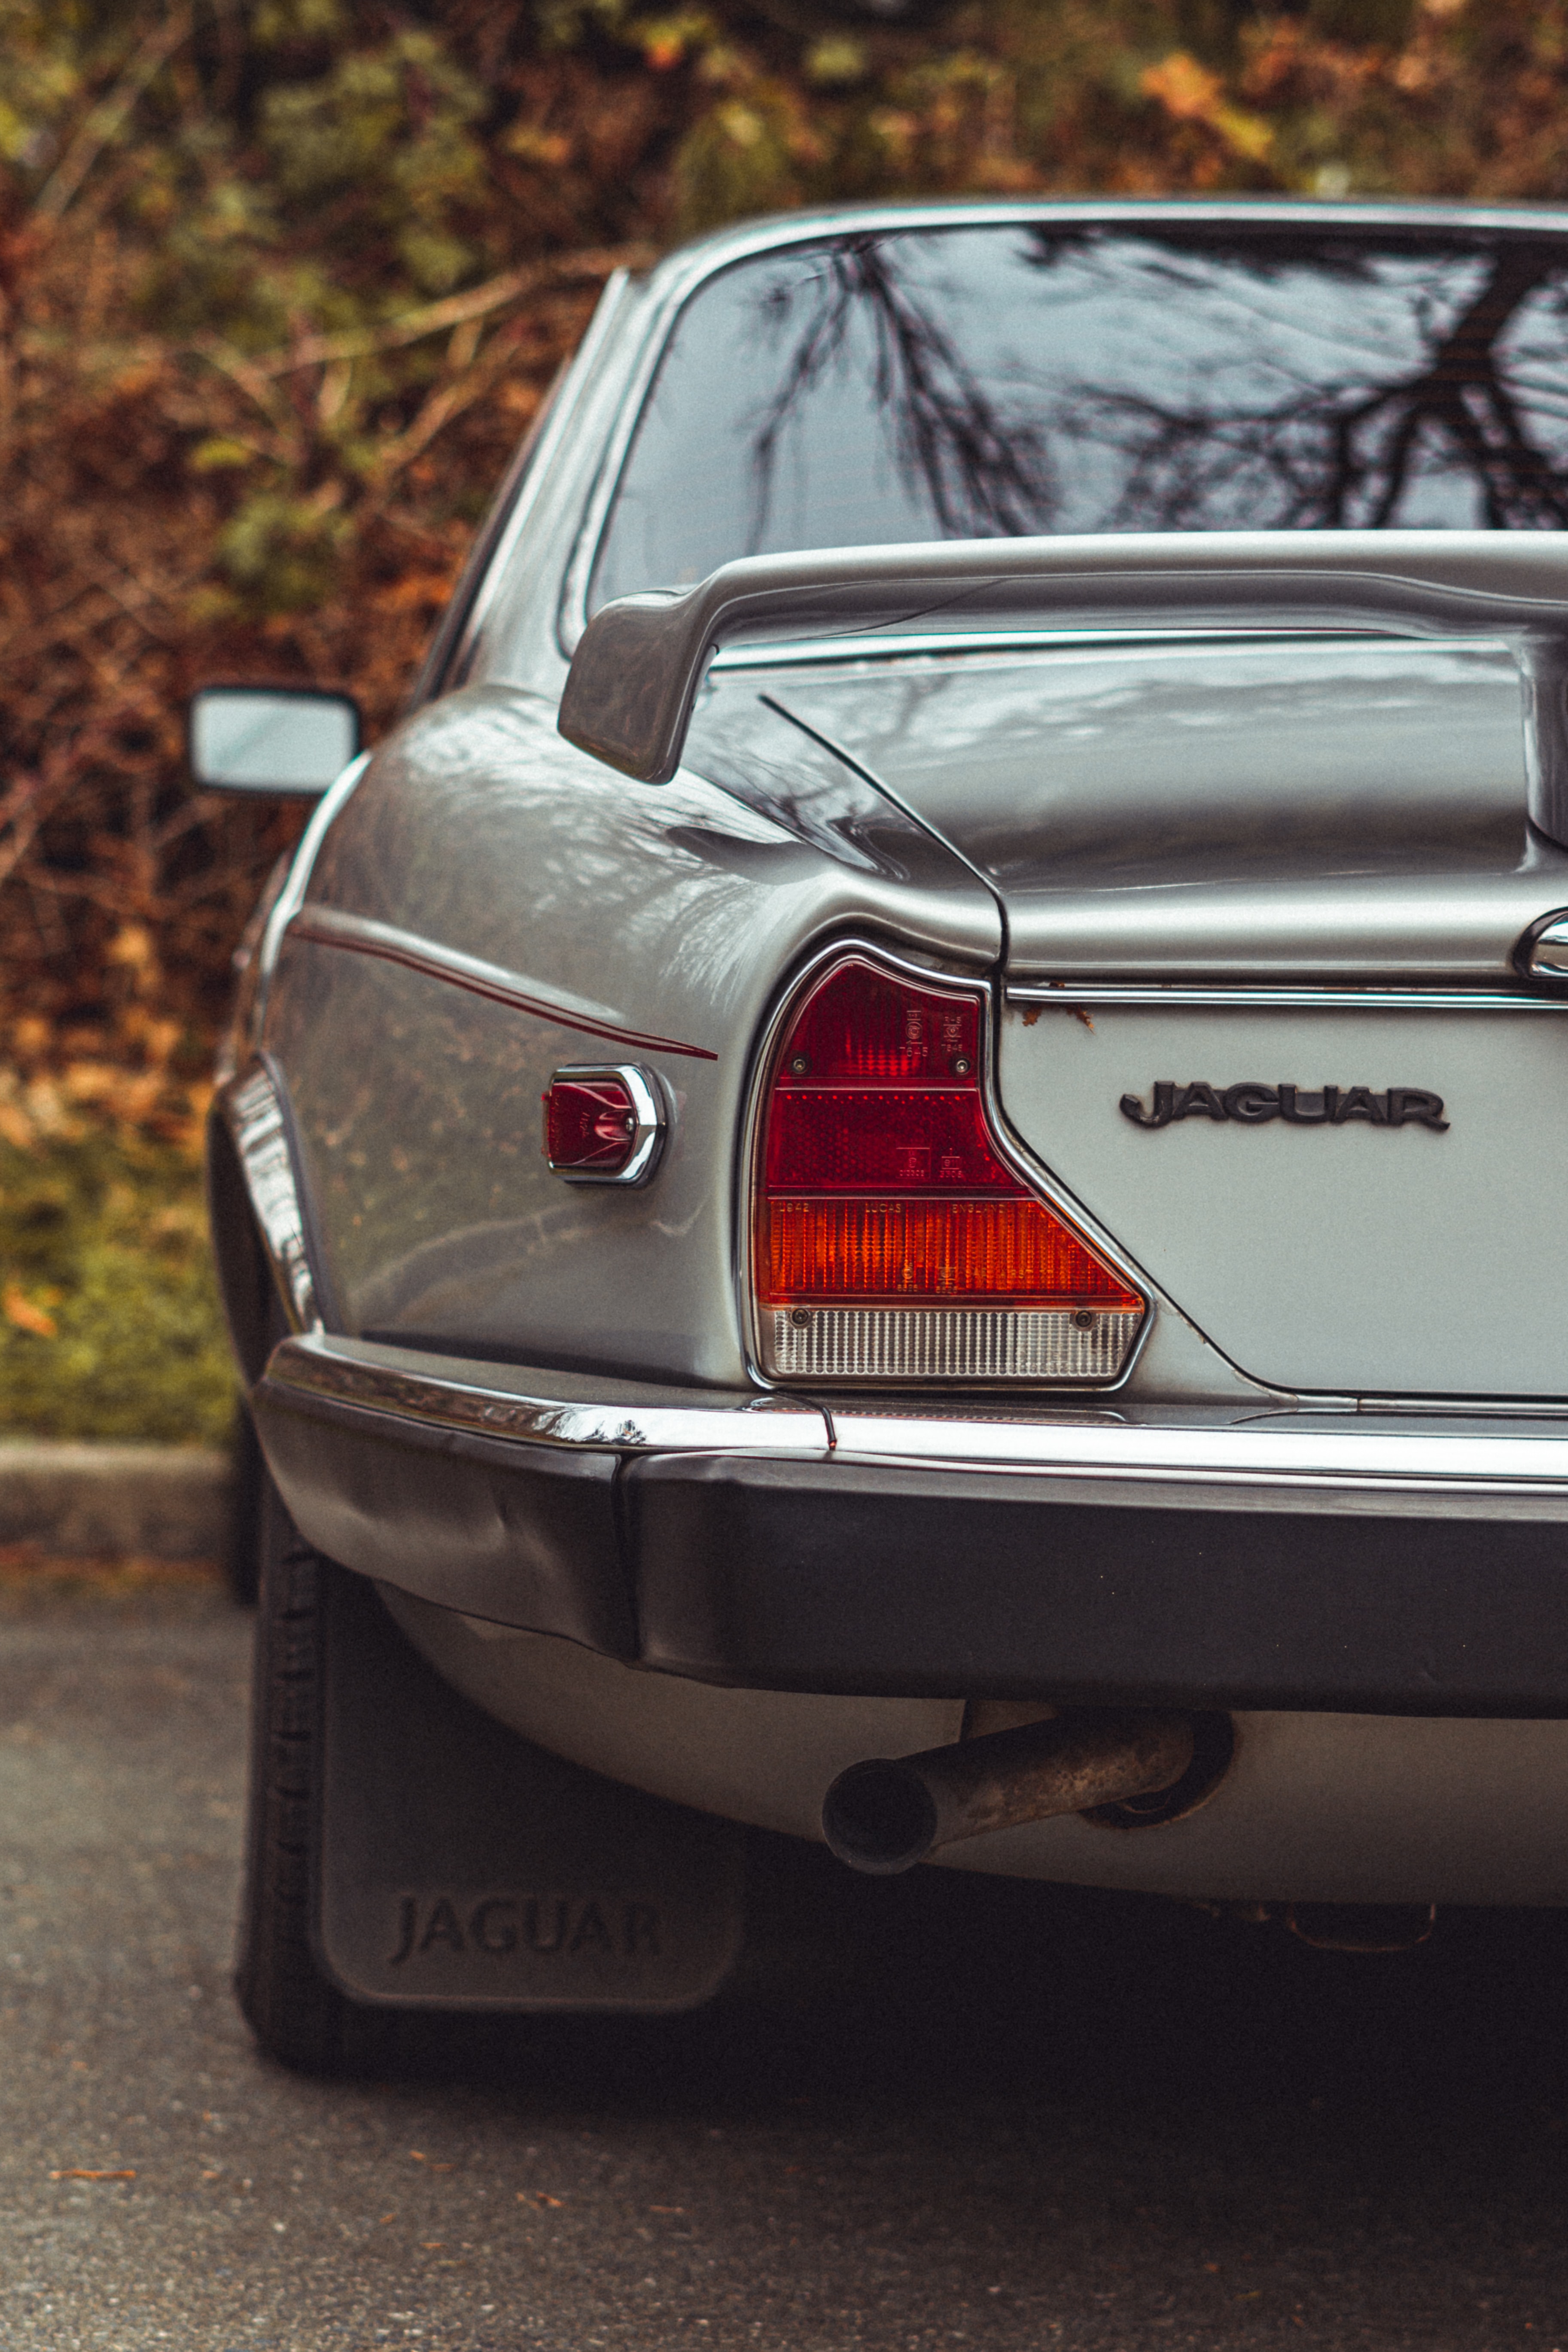 jaguar, cars, car, machine, vintage, back view, rear view, retro 1080p